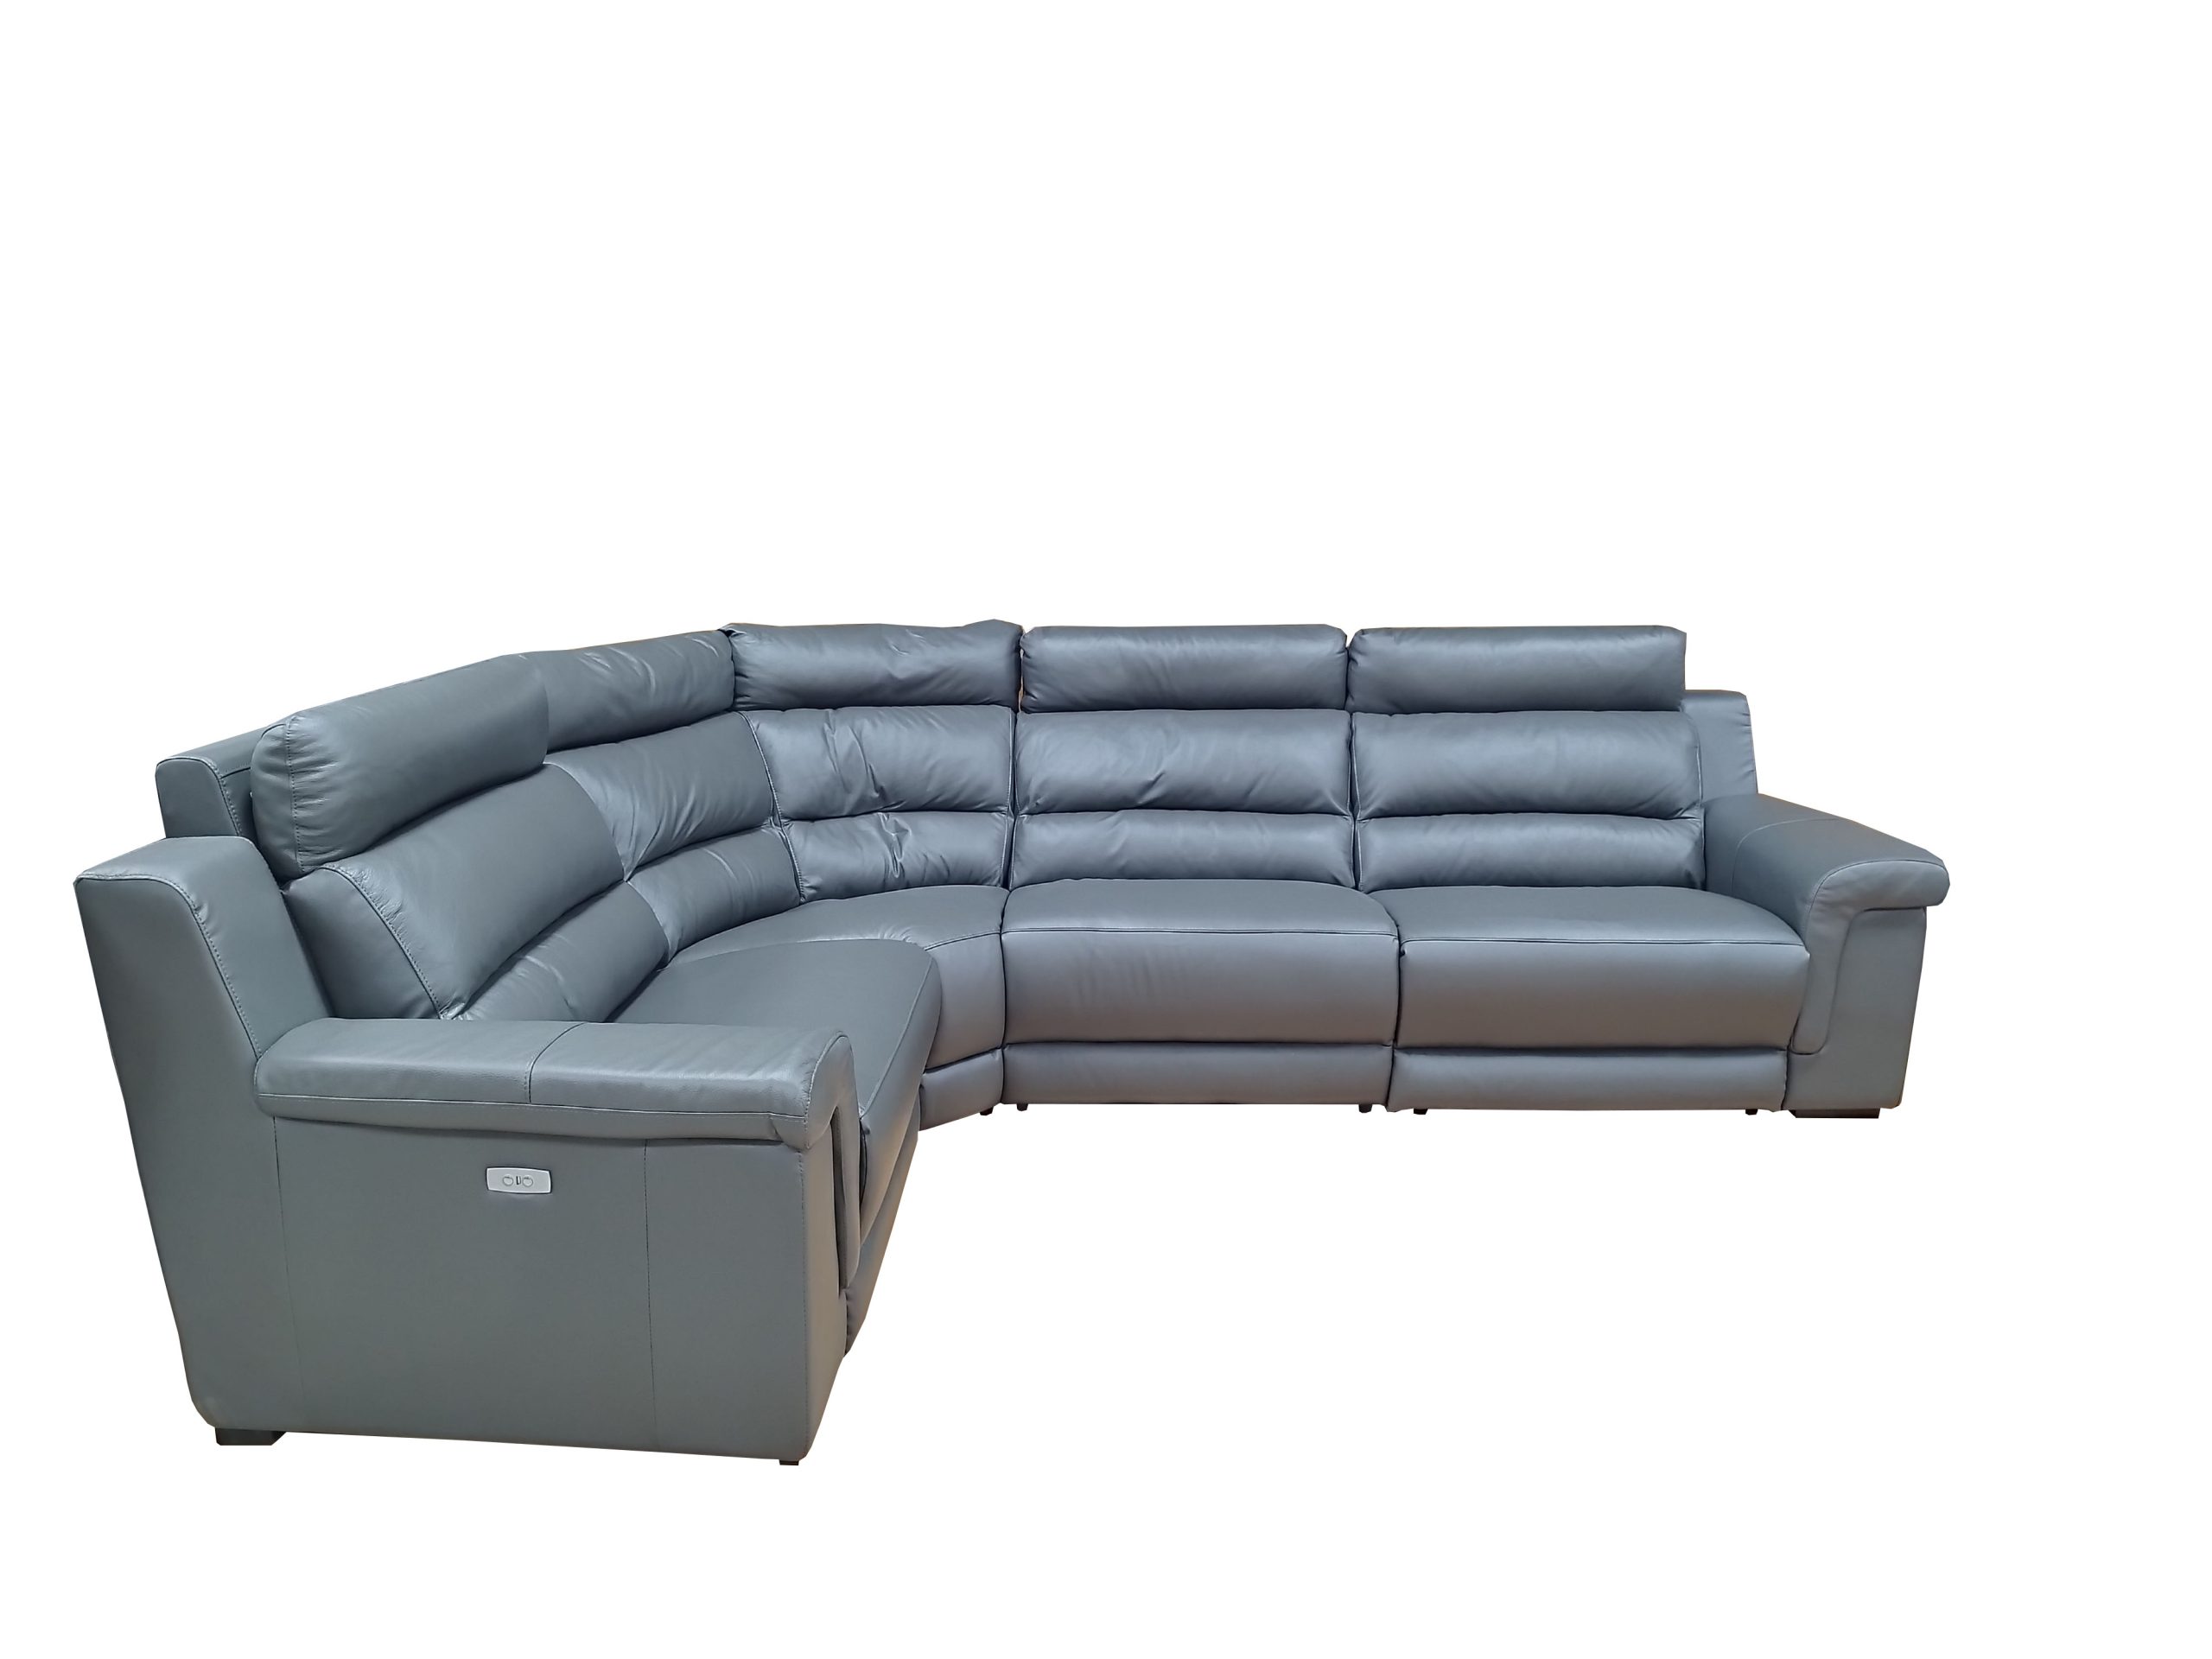 Stūra ādas dīvāns ar relaksācijas funkciju D99